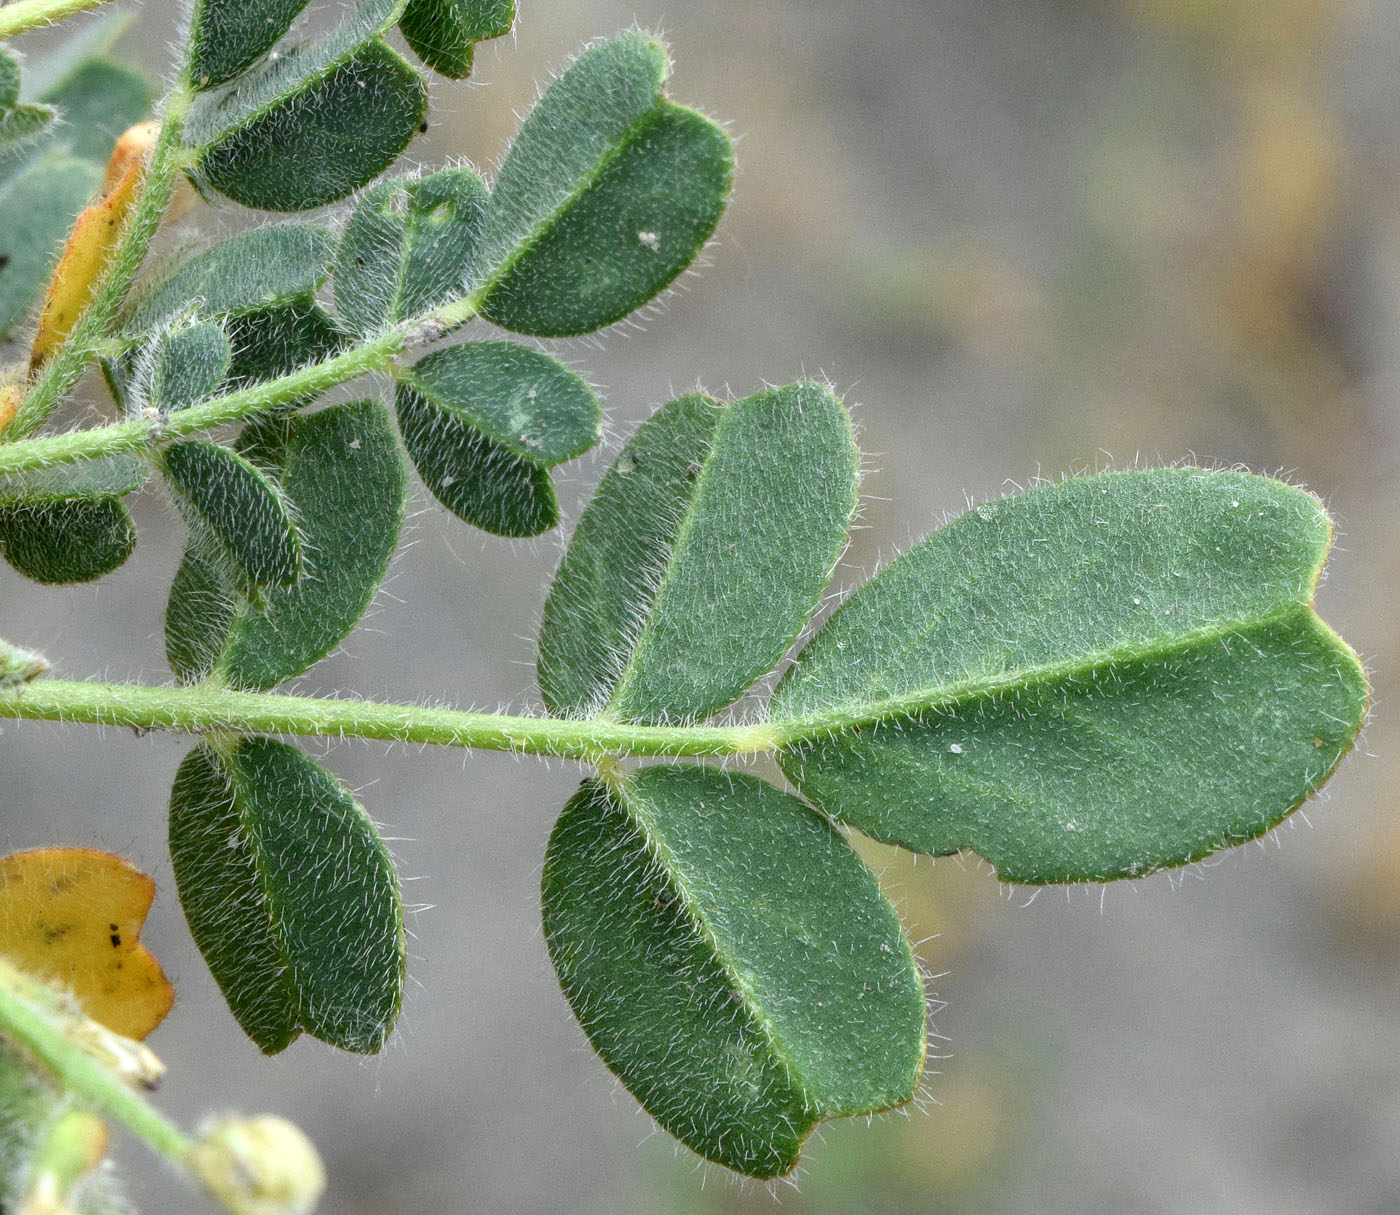 Изображение особи Astragalus arpilobus.